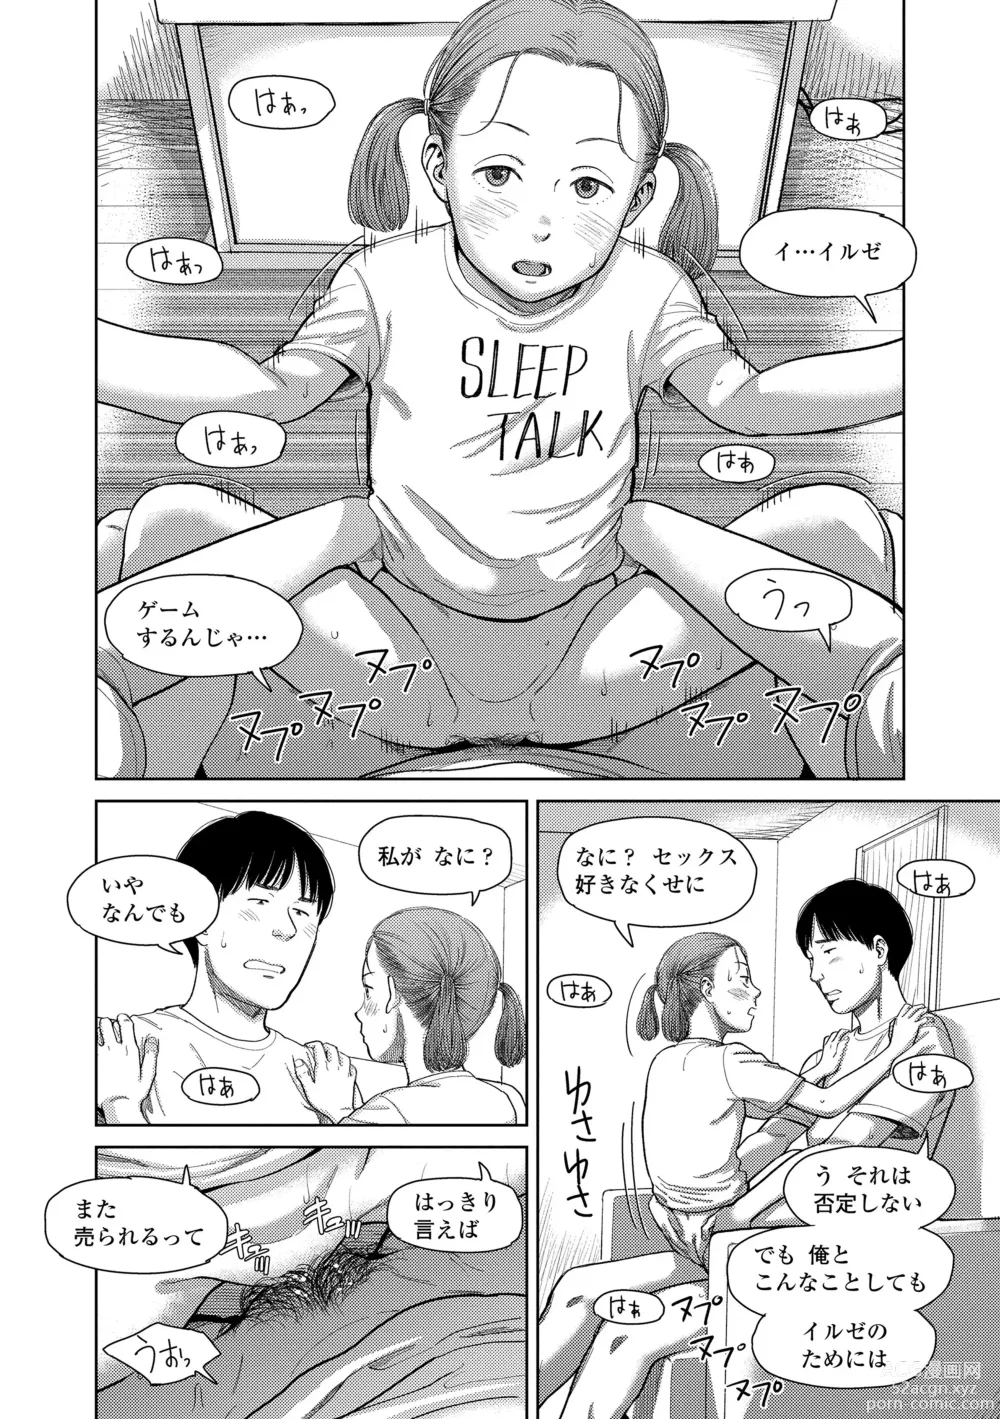 Page 184 of manga Over Kill